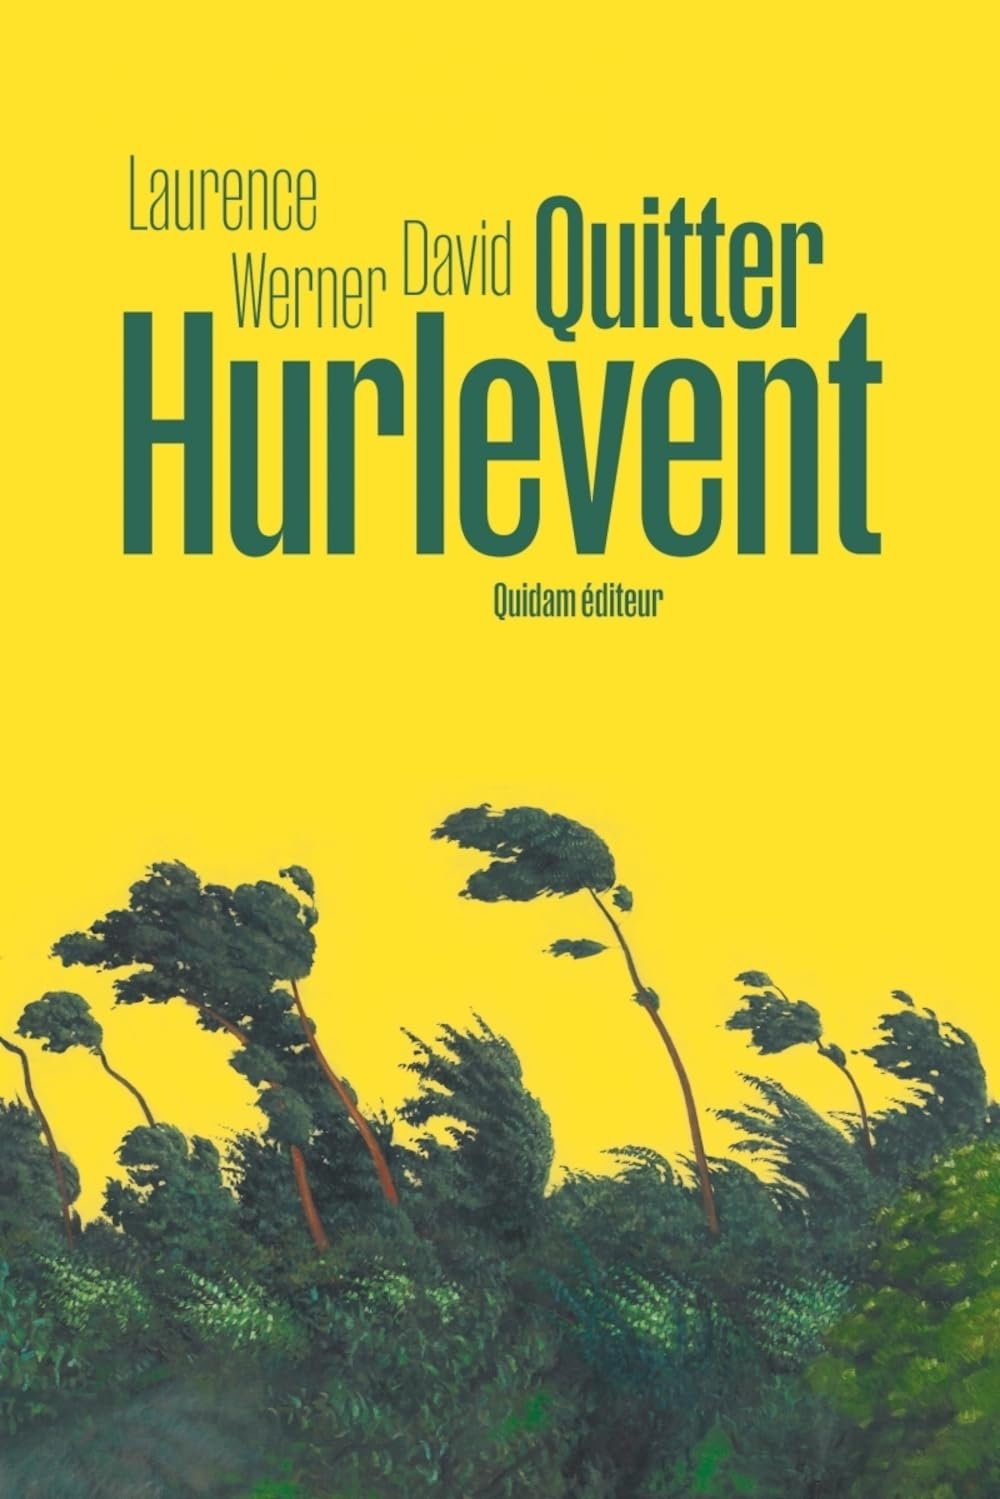 David laurence Werner - Quitter Hurlevent